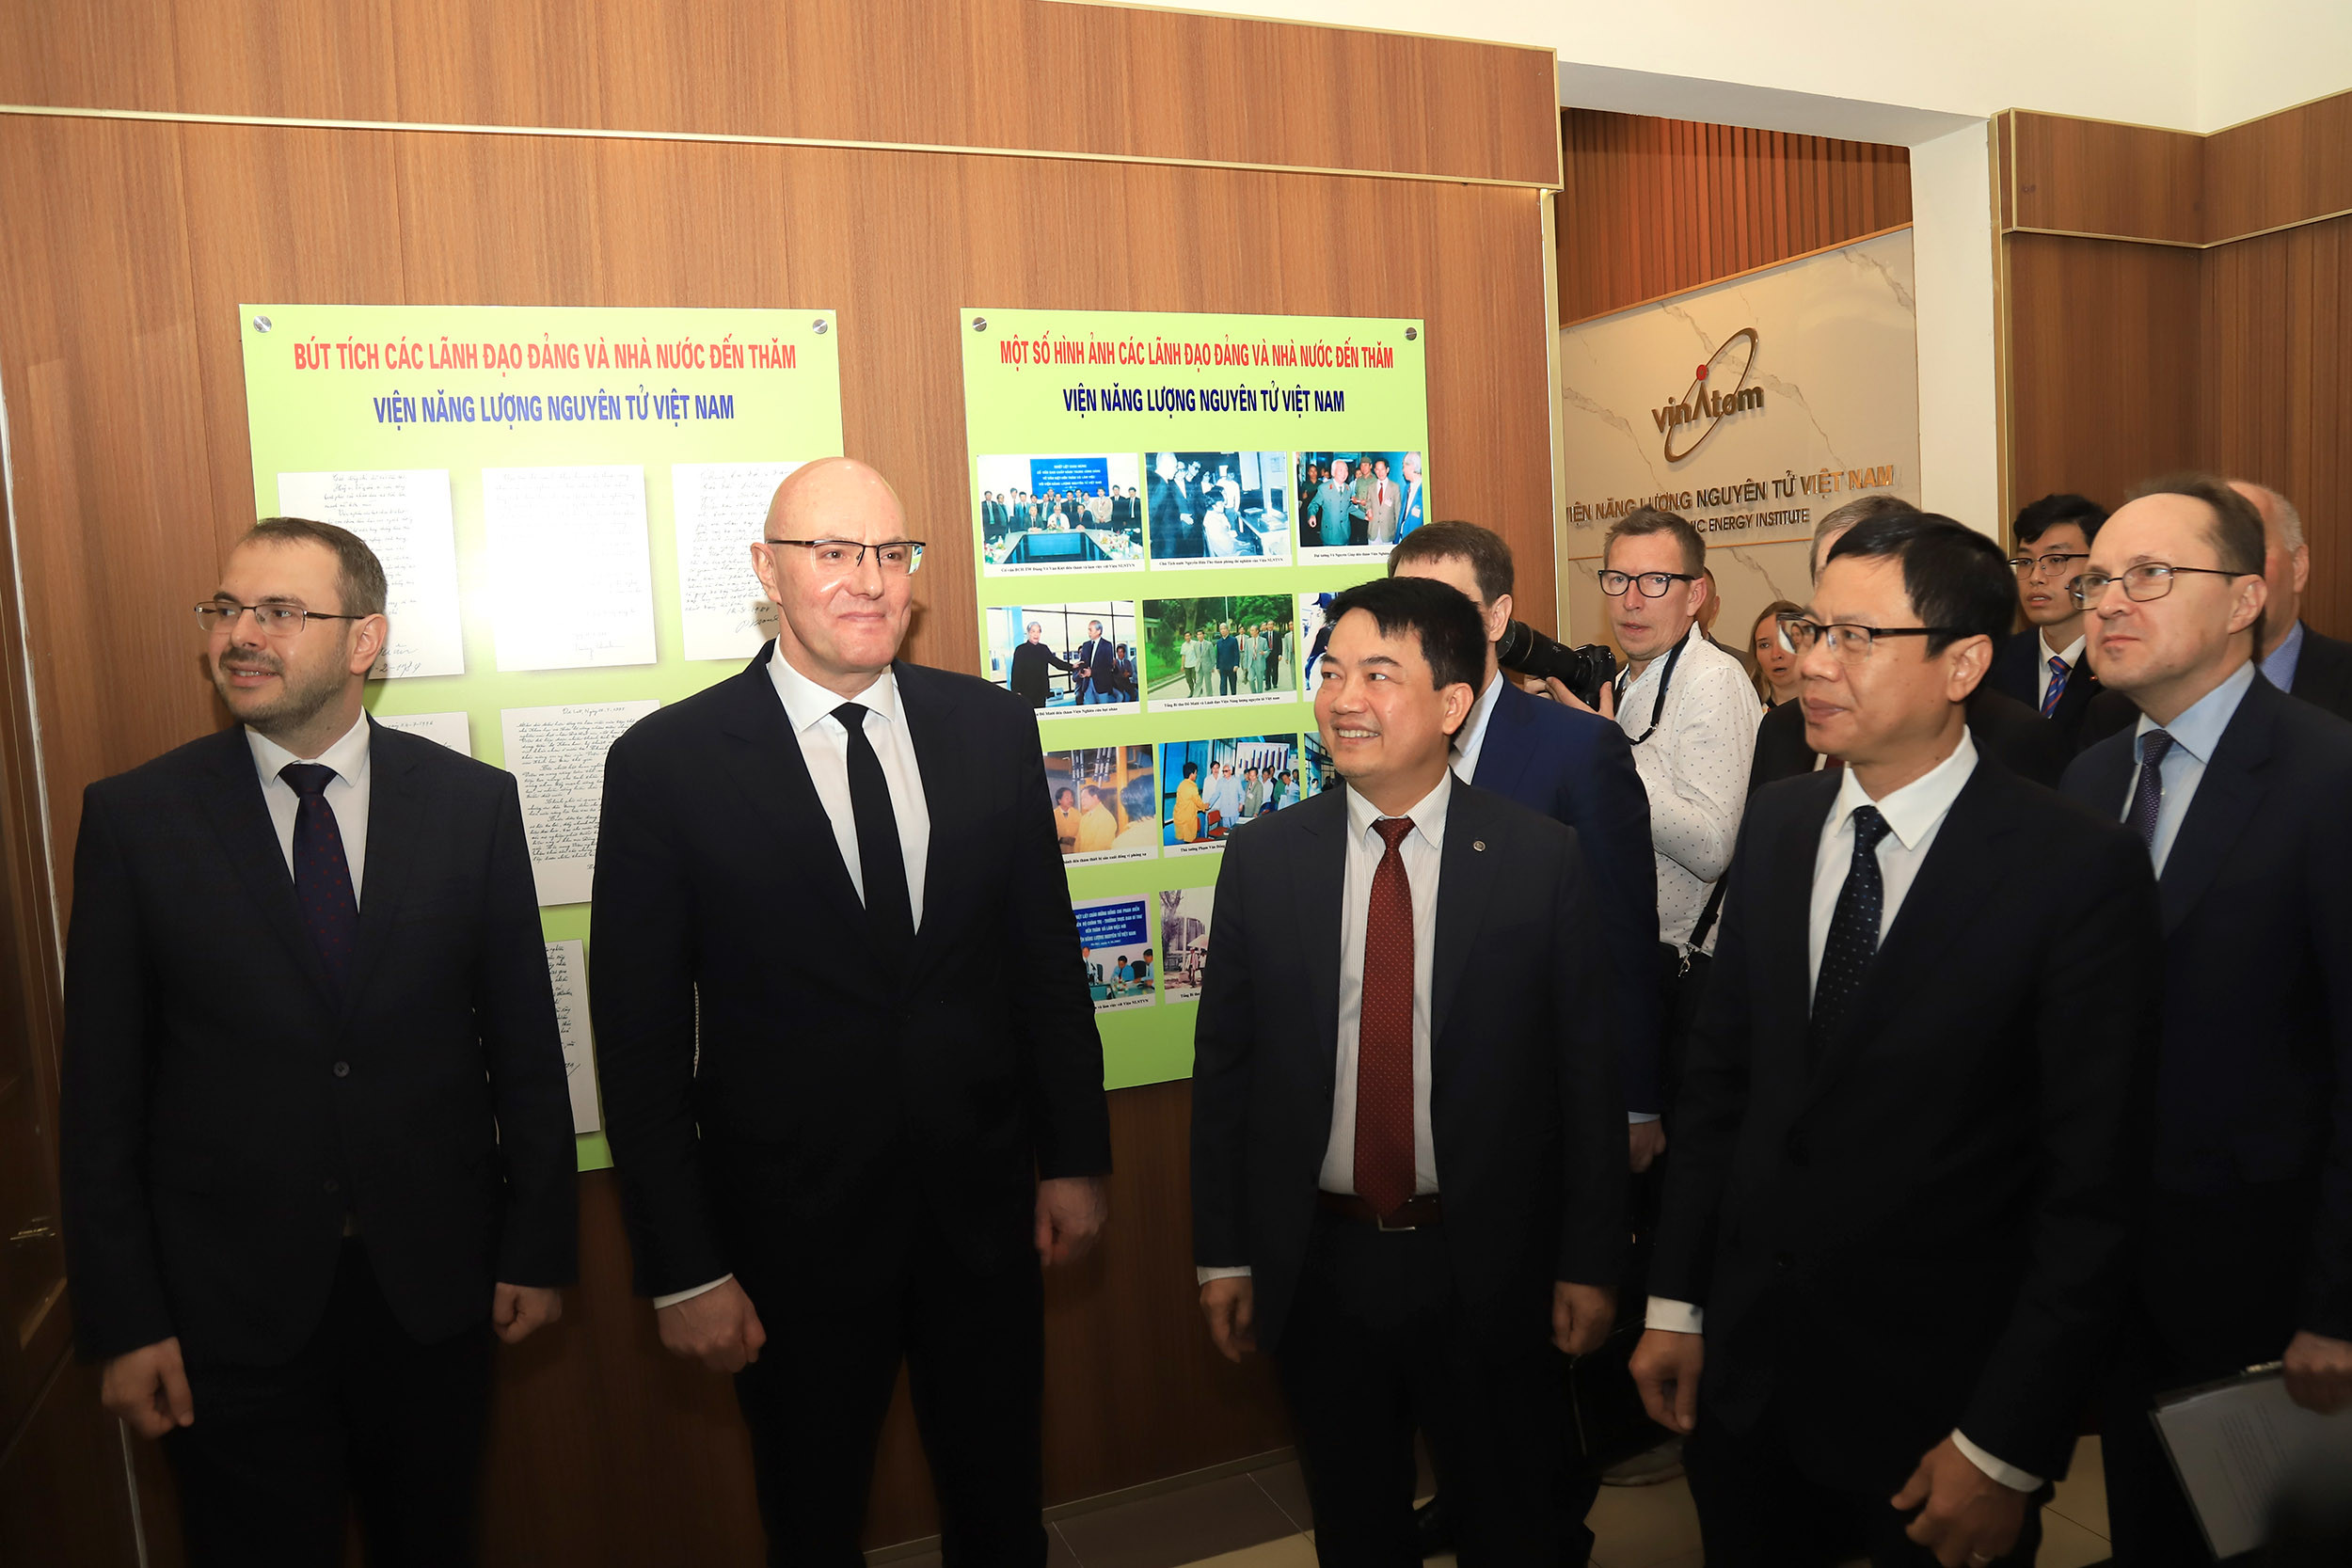 Phó Thủ tướng Nga thăm Viện Năng lượng Nguyên tử Việt Nam